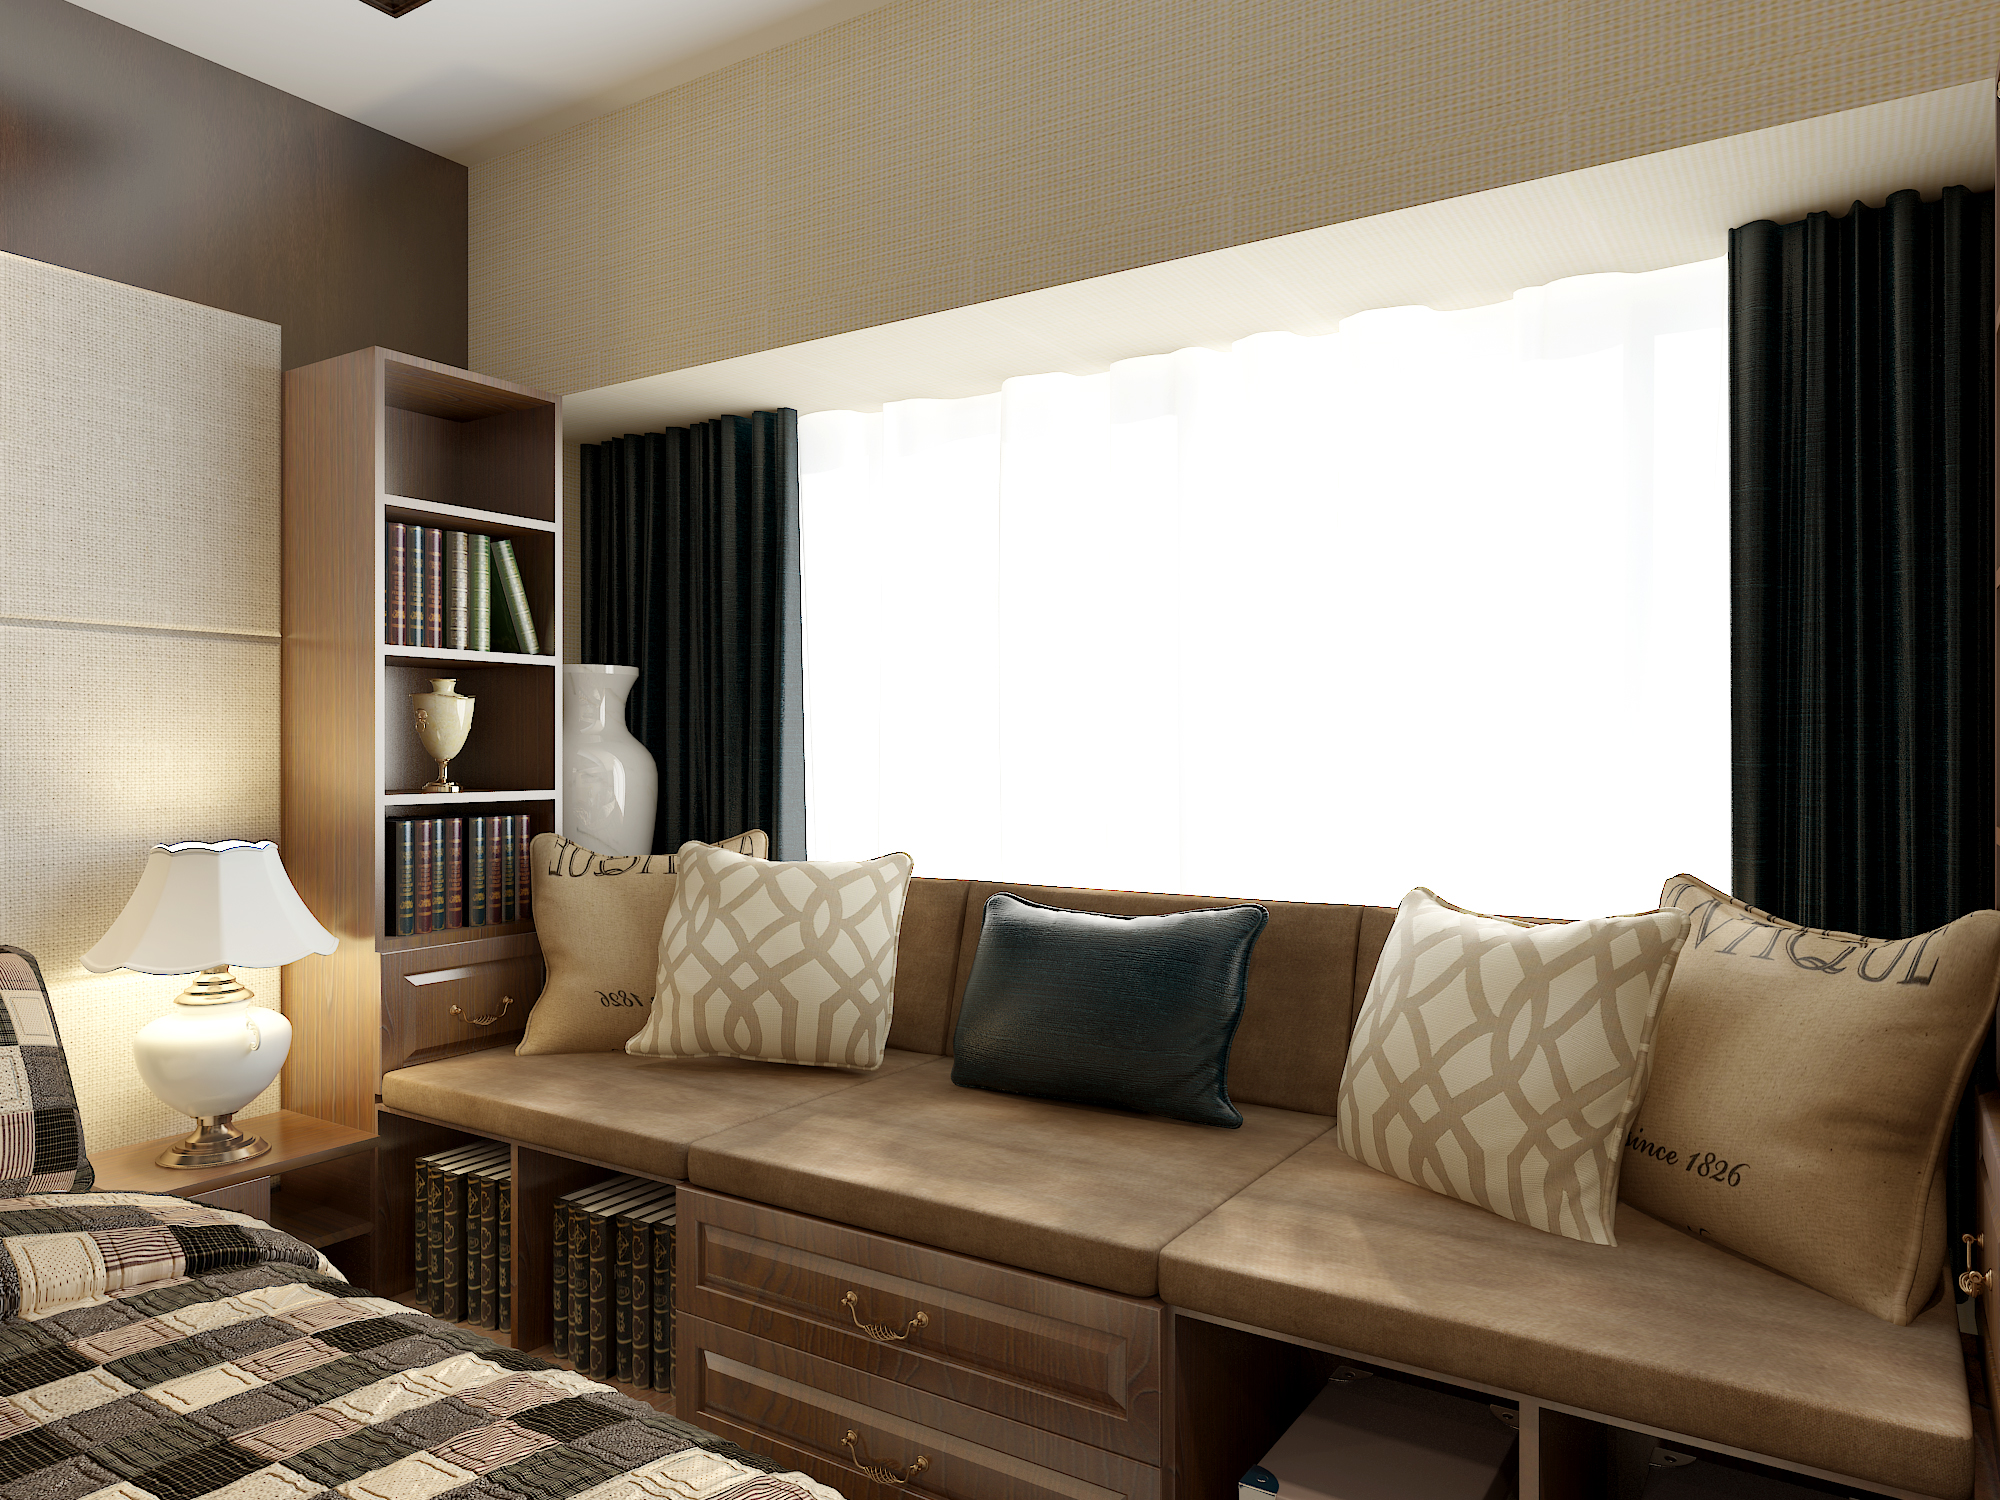 新中式风格卧室家具